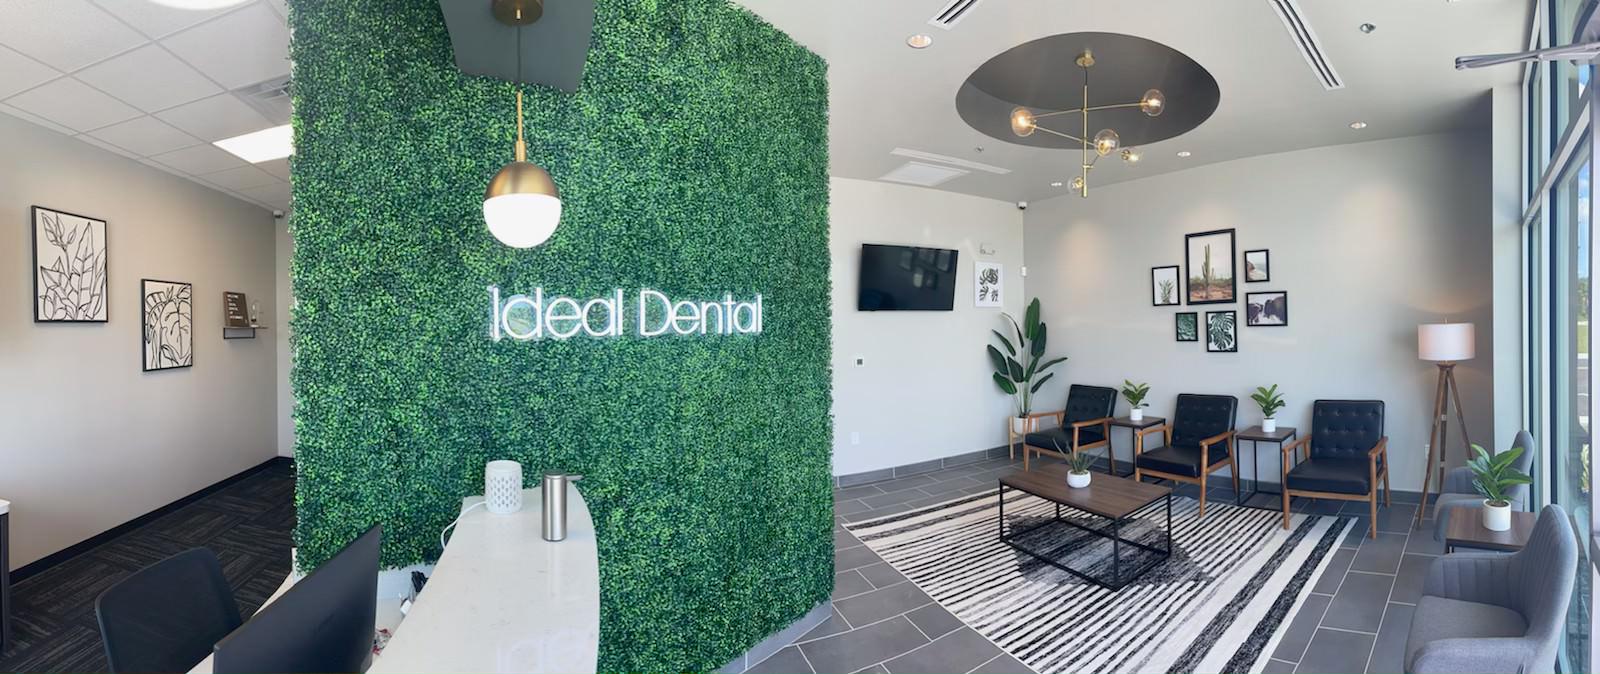 Image 4 | Ideal Dental Central Austin